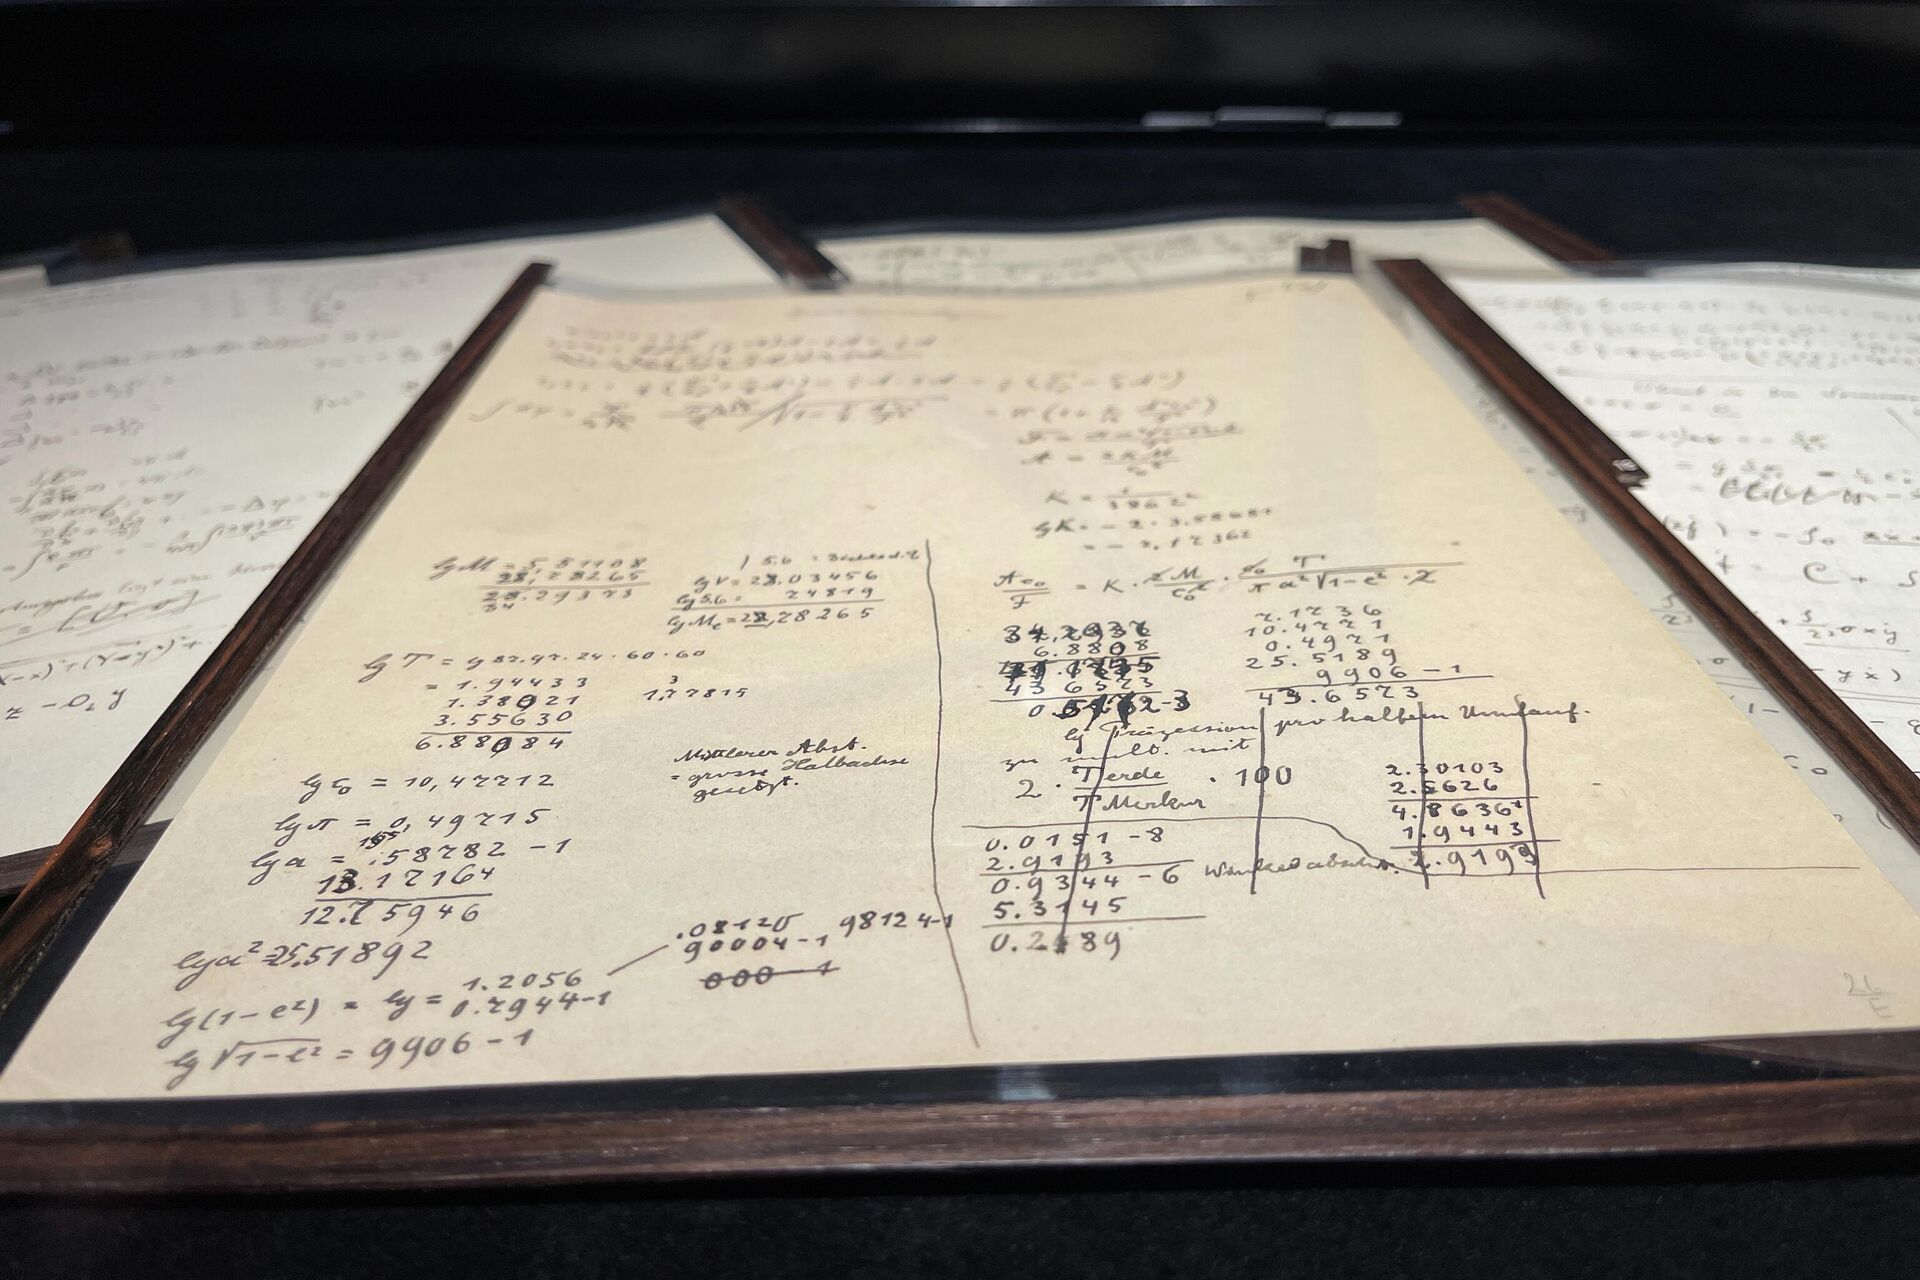 El manuscrito de 54 páginas escrito conjuntamente por Albert Einstein y Michele Besso entre junio de 1913 y principios de 1914, que documenta una etapa crucial en el desarrollo de la teoría general de la relatividad, se exhibe en la Casa Christie's en París. - Sputnik Mundo, 1920, 24.11.2021